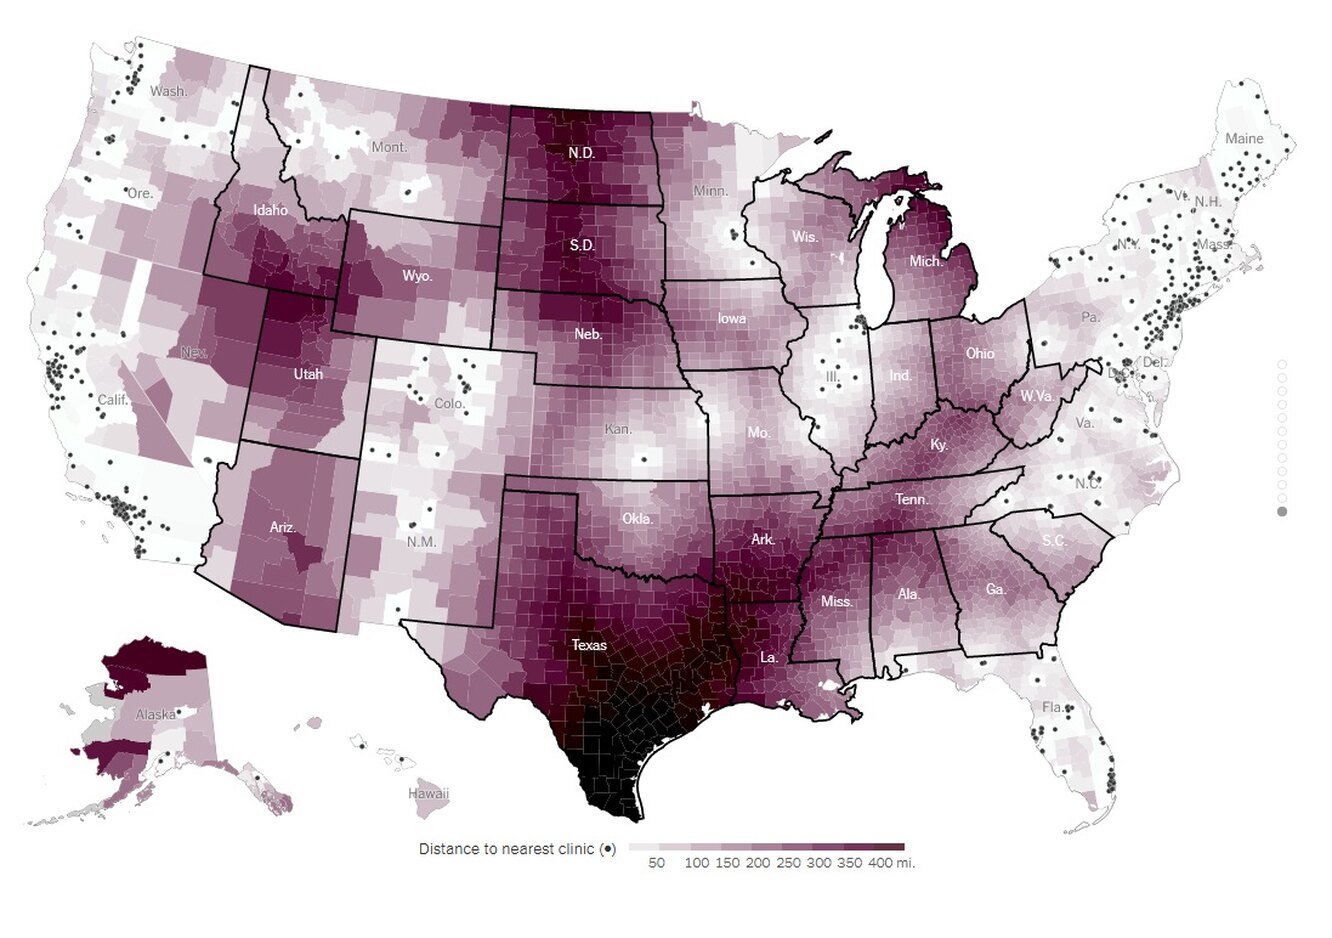 The New York Time опублікував карту з клініками, де можна зробити аборт у США